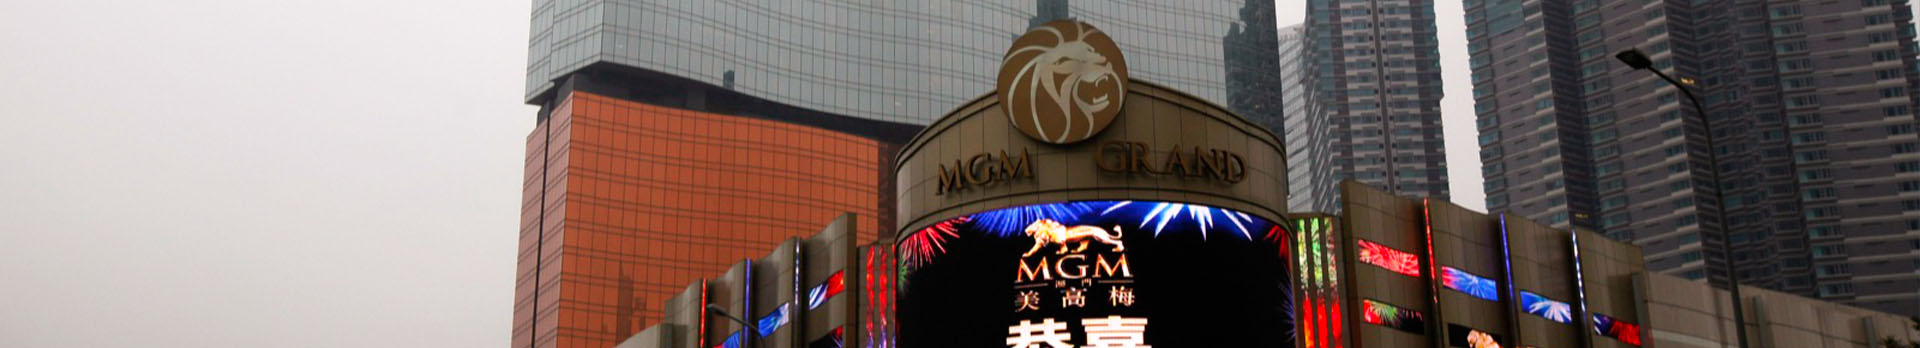 MGM Casino Macau